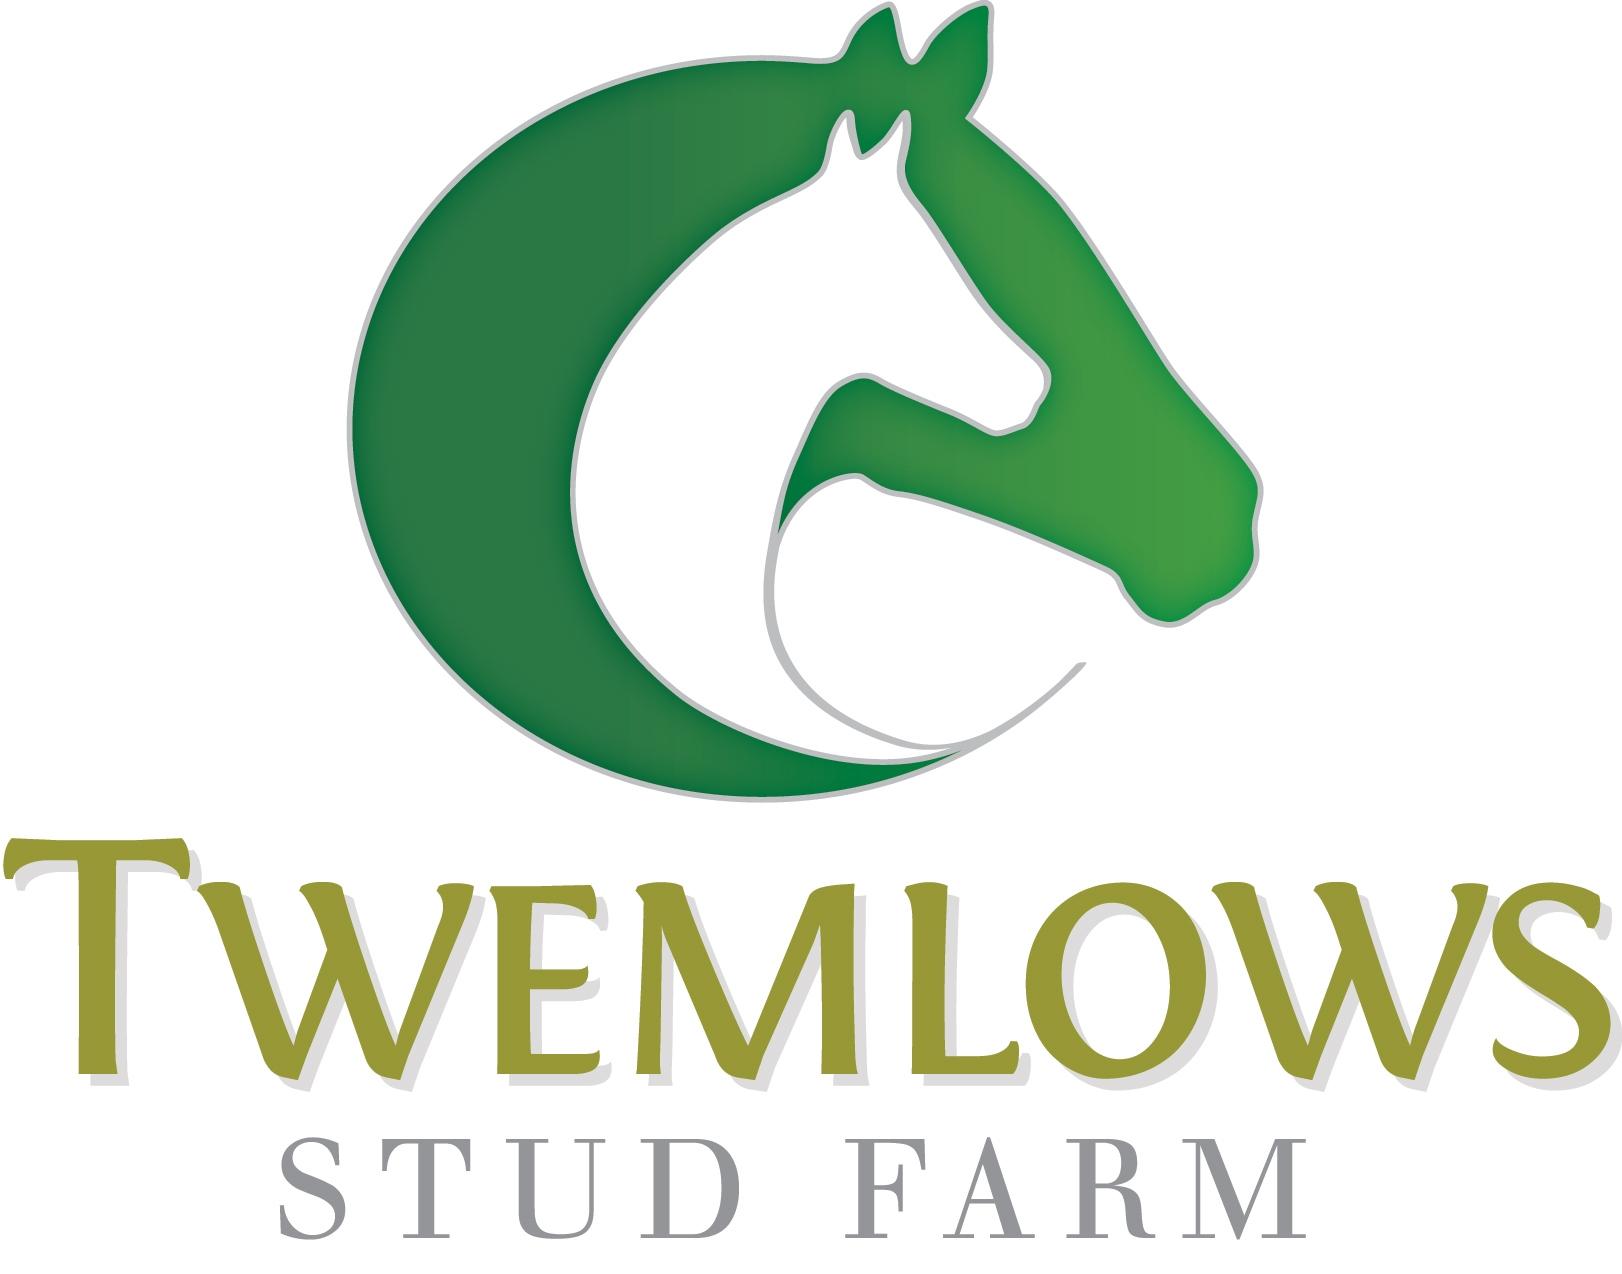 Twemlows Logo Colour High Res